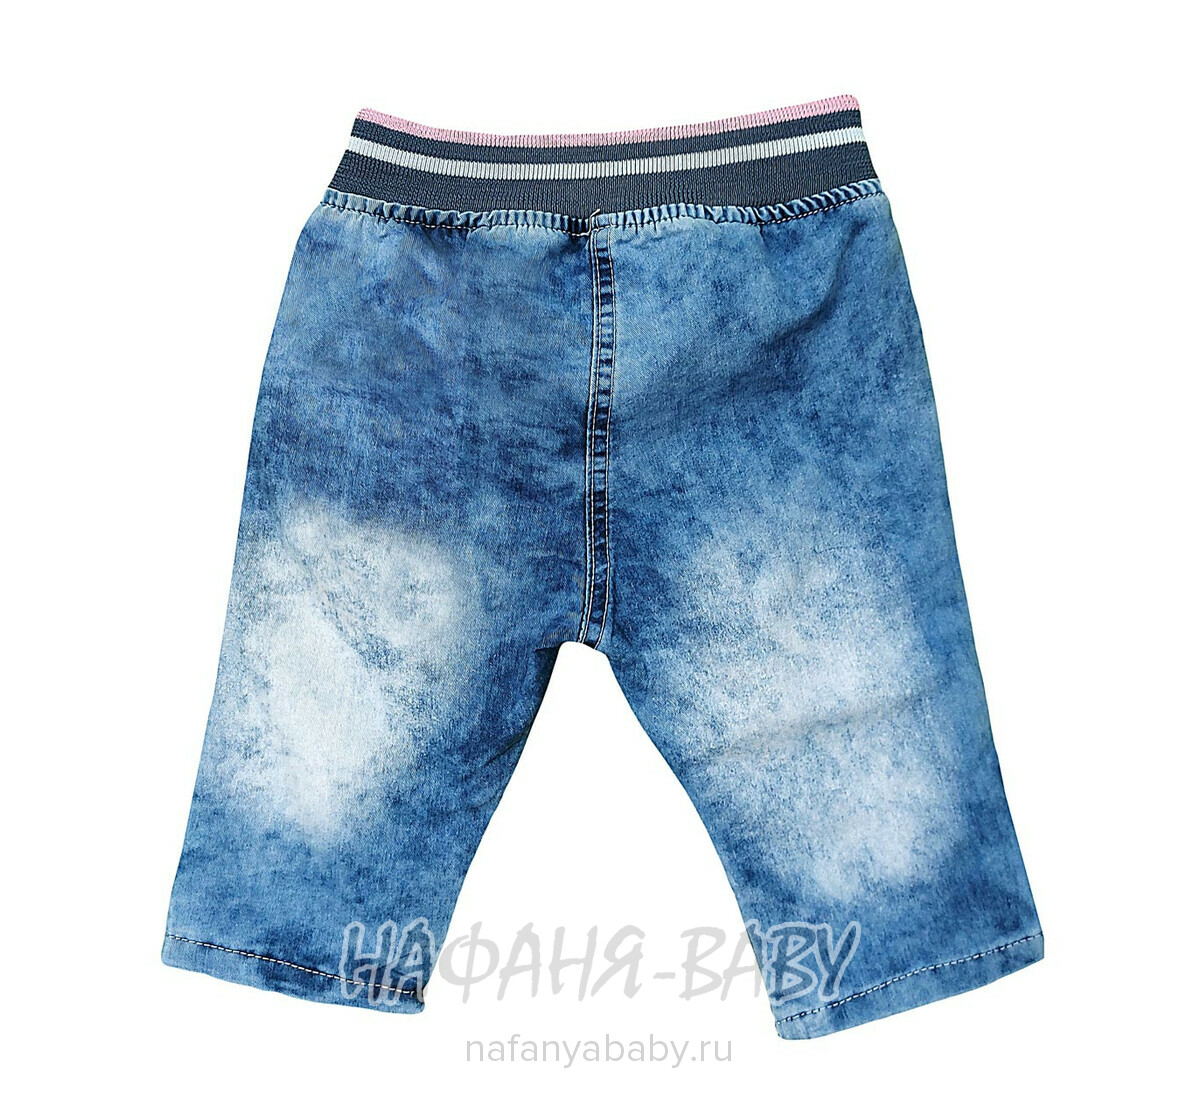 Детские джинсовые капри KIDEA, купить в интернет магазине Нафаня. арт: 411.